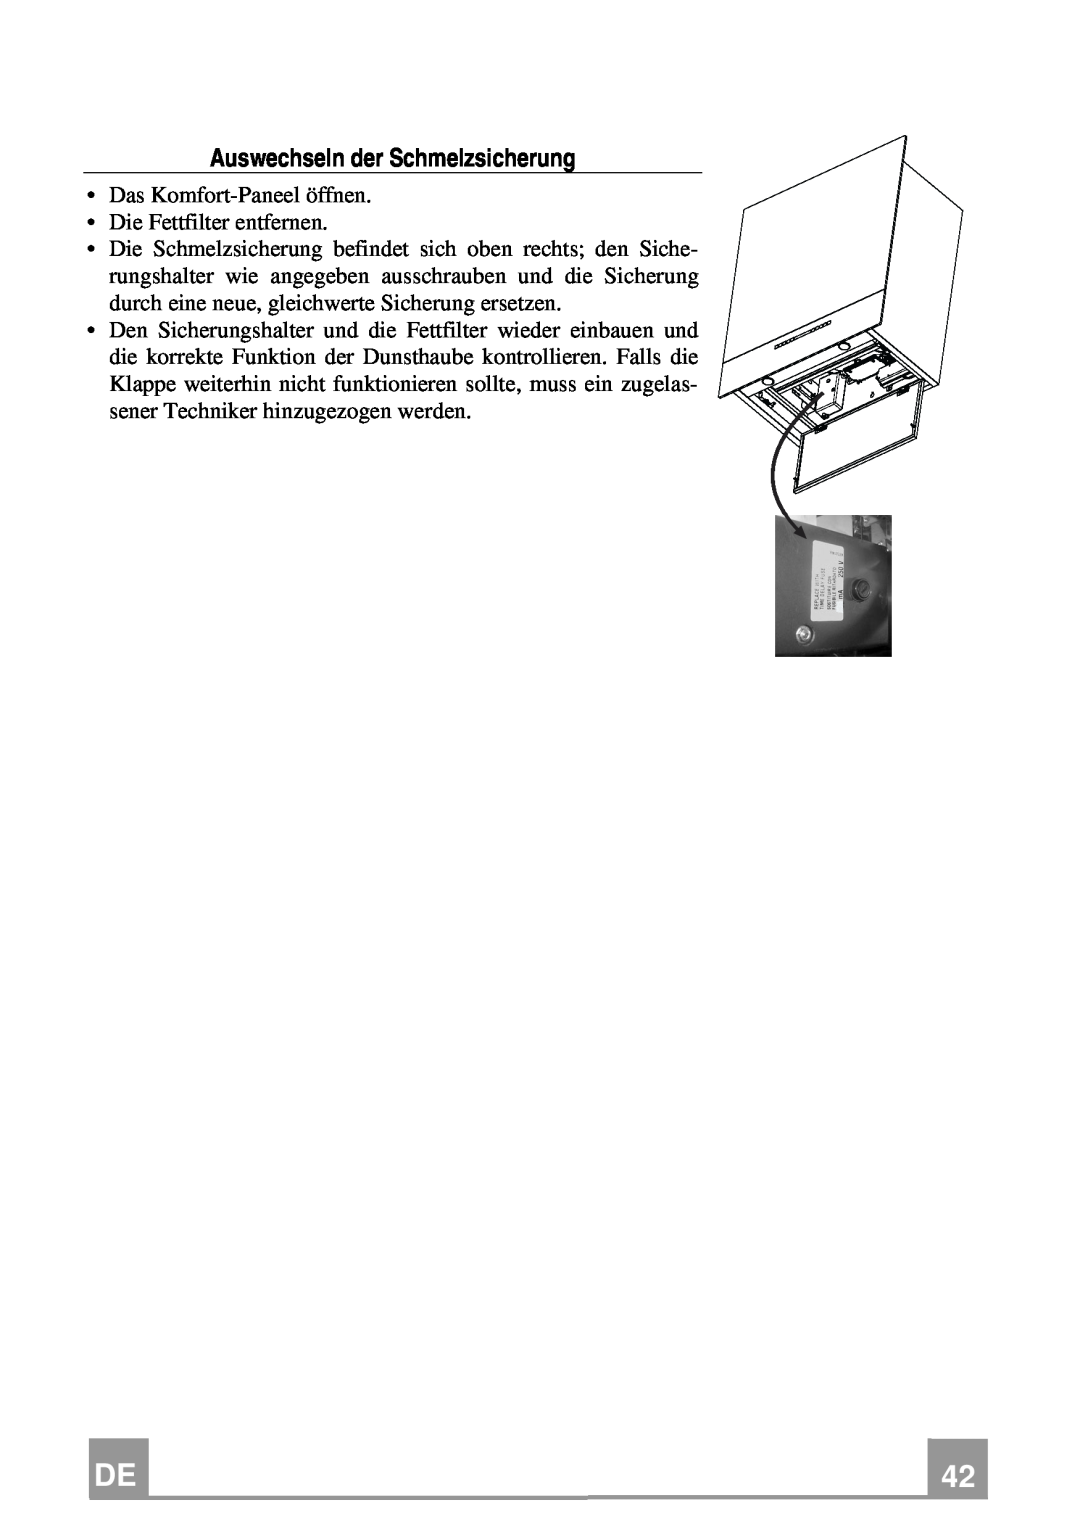 Franke Consumer Products FCR 708-H TC manual Auswechseln der Schmelzsicherung 